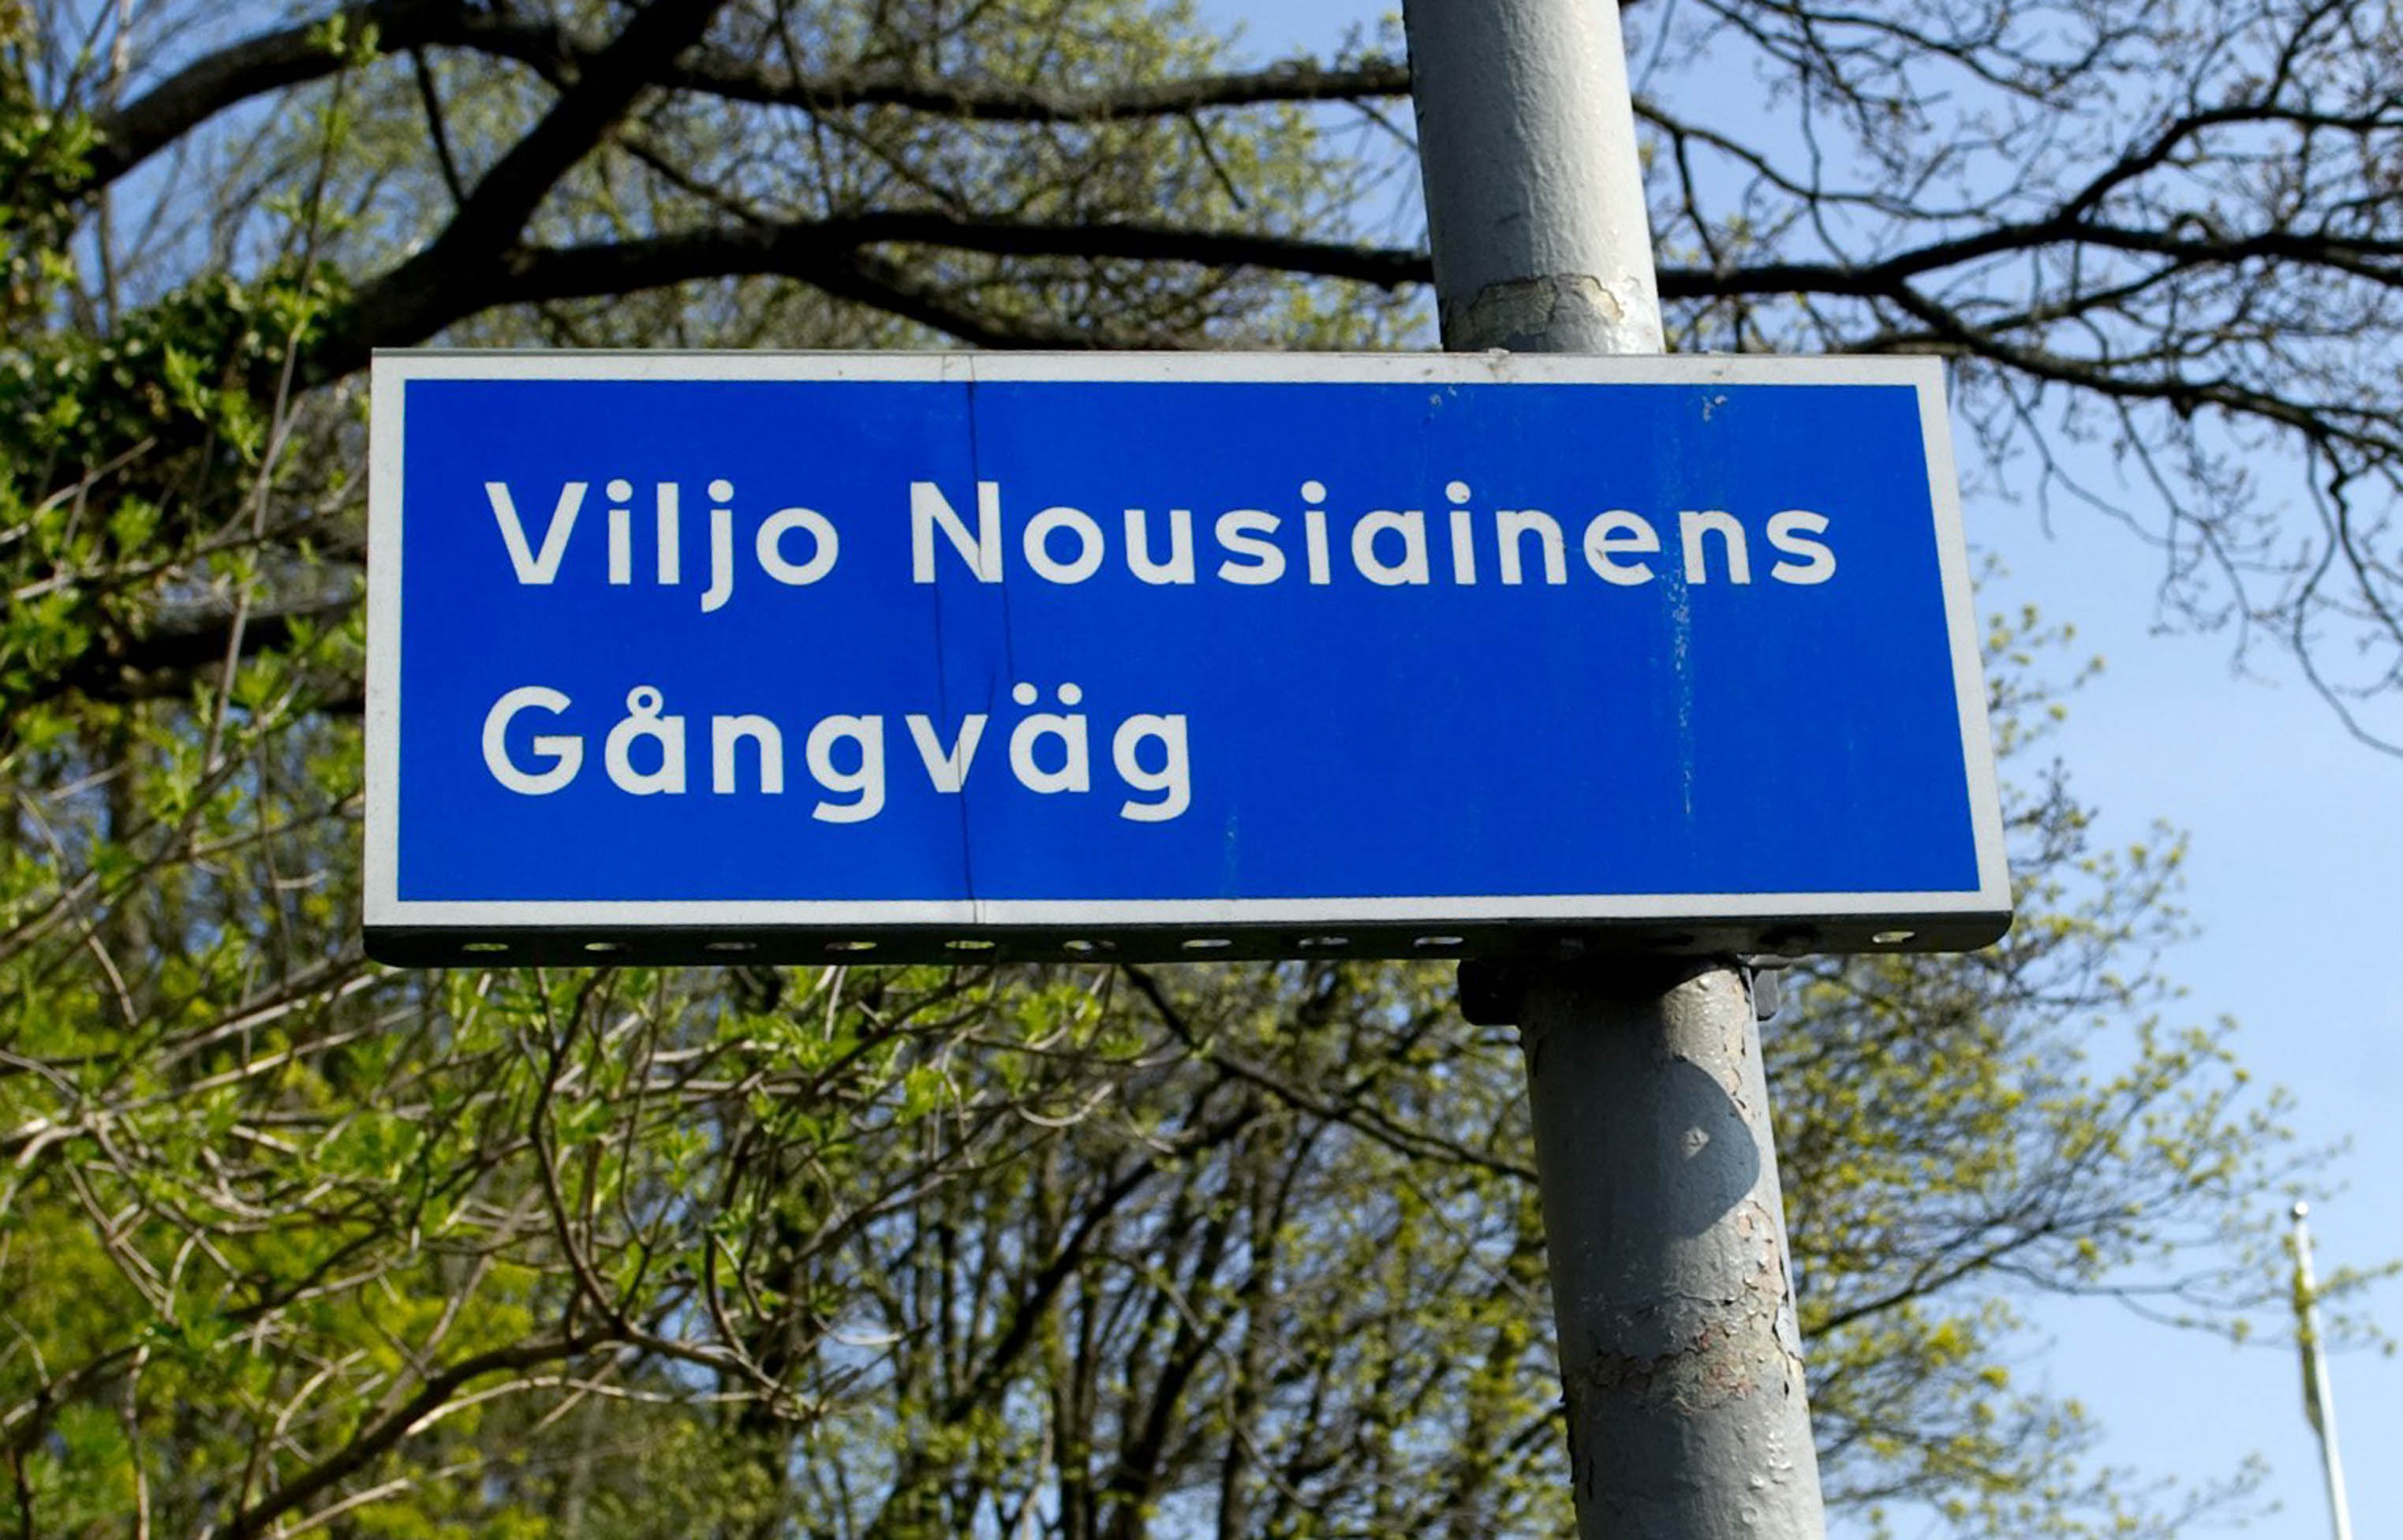 Gångvägen där Örgryte IS friidrottskansli ligger har uppkallats efter Viljo Nousiainen.